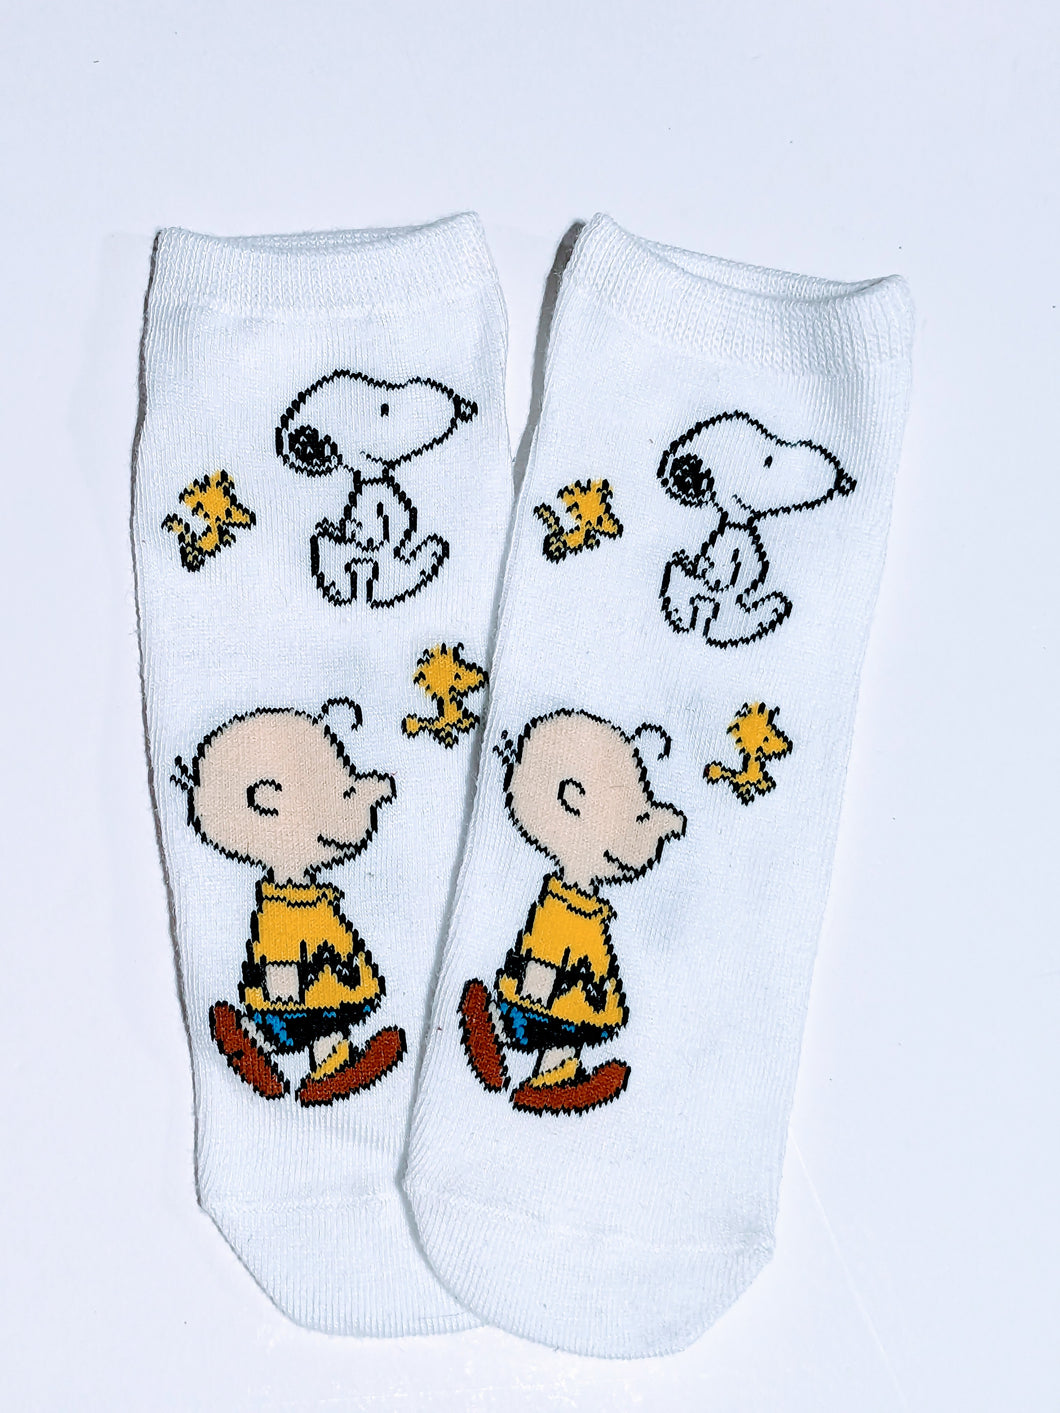 Charlie Brown, Snoopy & Woodstock Ankle Socks